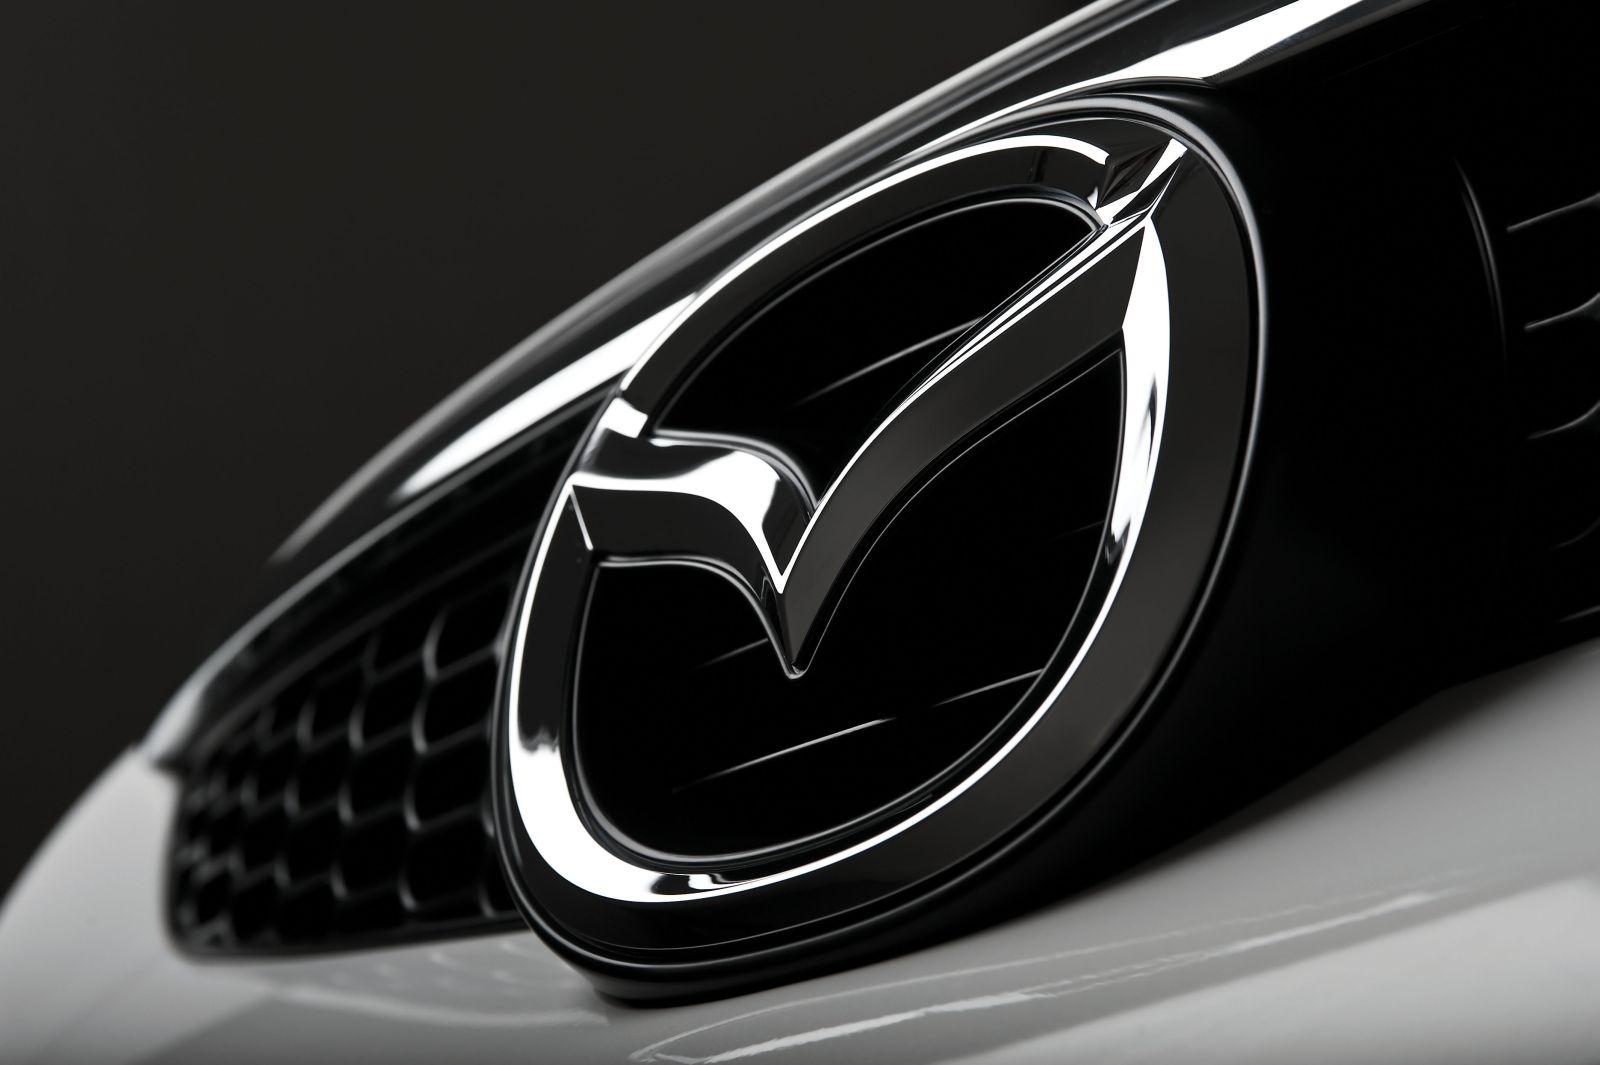 Black Mazda Logo - Mazda Logo, Mazda Car Symbol Meaning and History | Car Brand Names.com